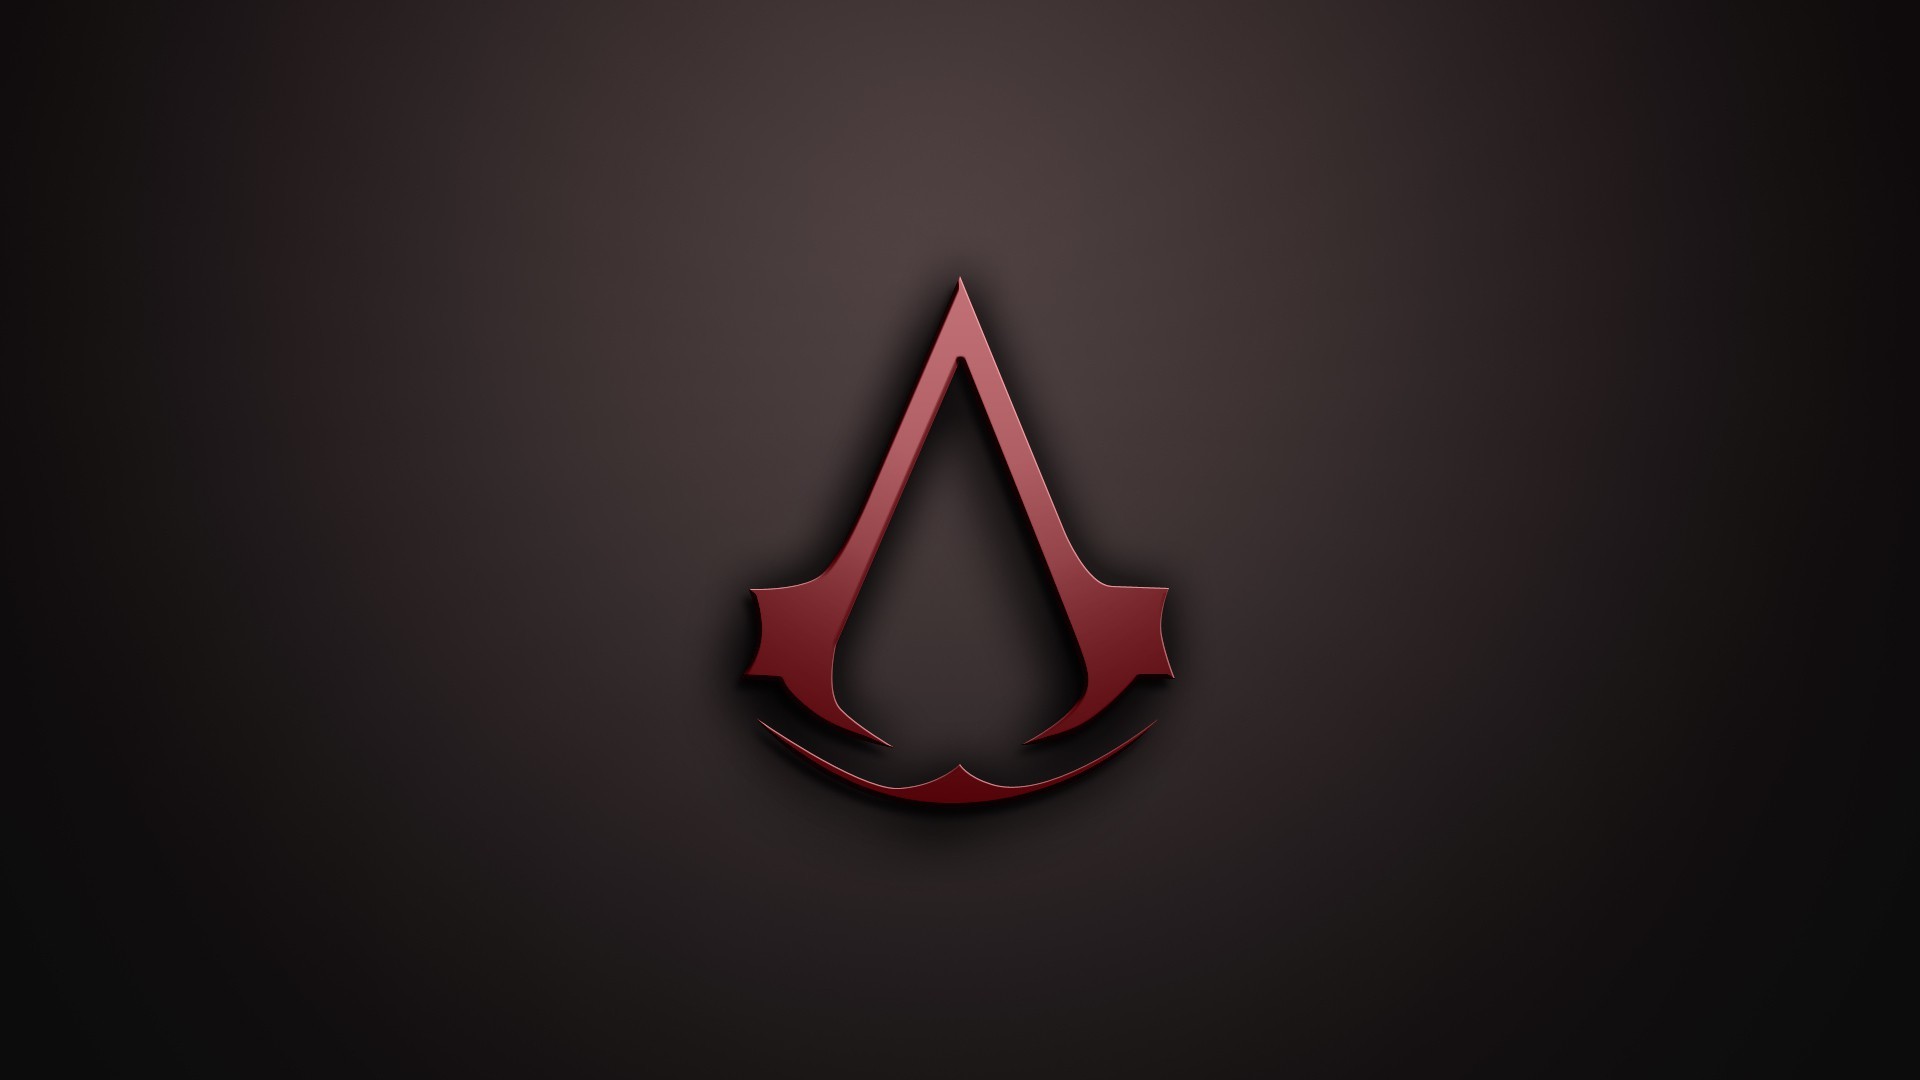 Assassin's Creed logo wallpaper